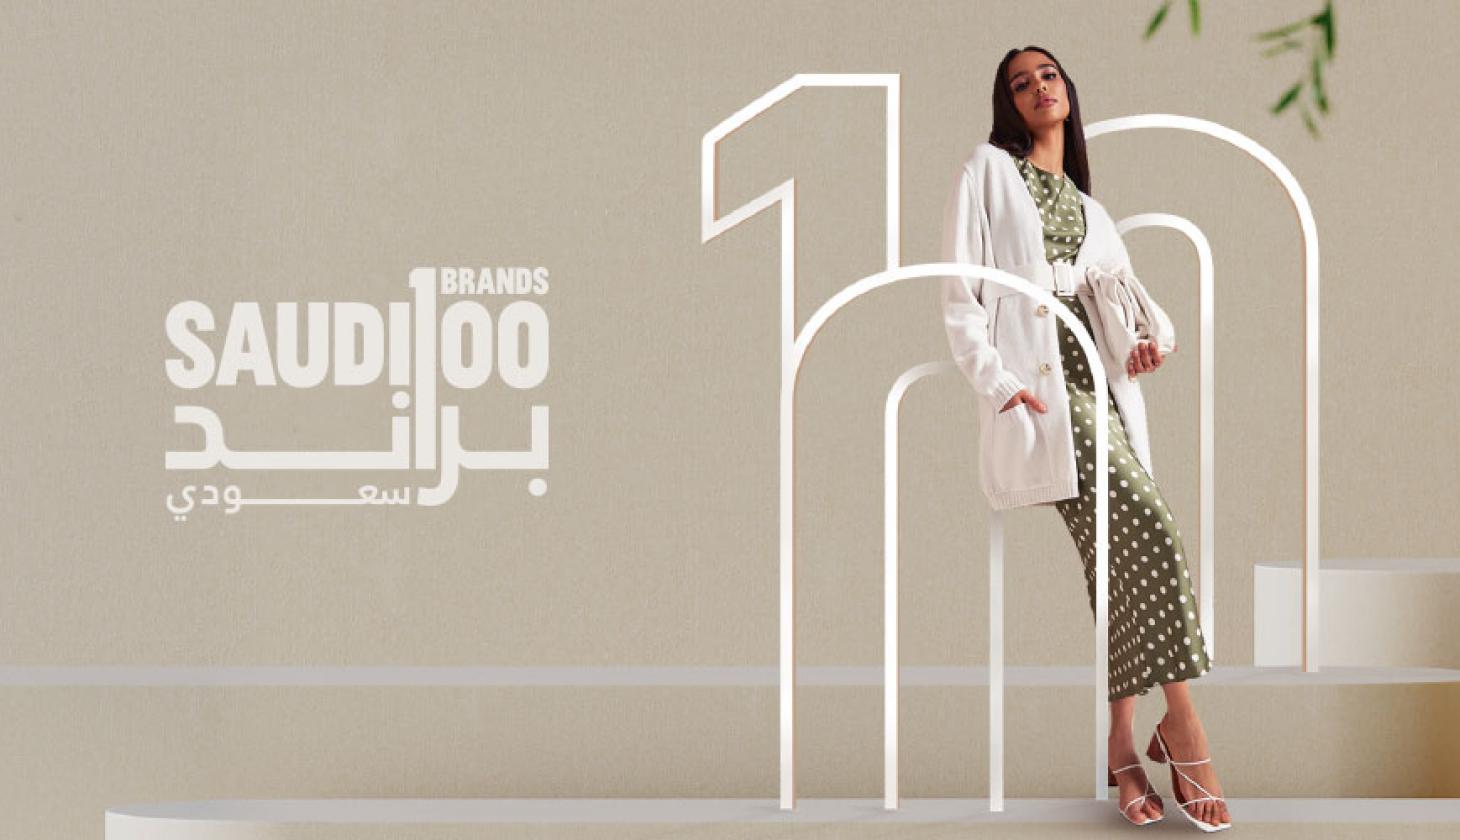 Le programme Saudi 100 Brands a pour objectif de renforcer l'avantage commercial concurrentiel des marques saoudiennes dans l'industrie mondiale de la mode. (Commission de la mode)